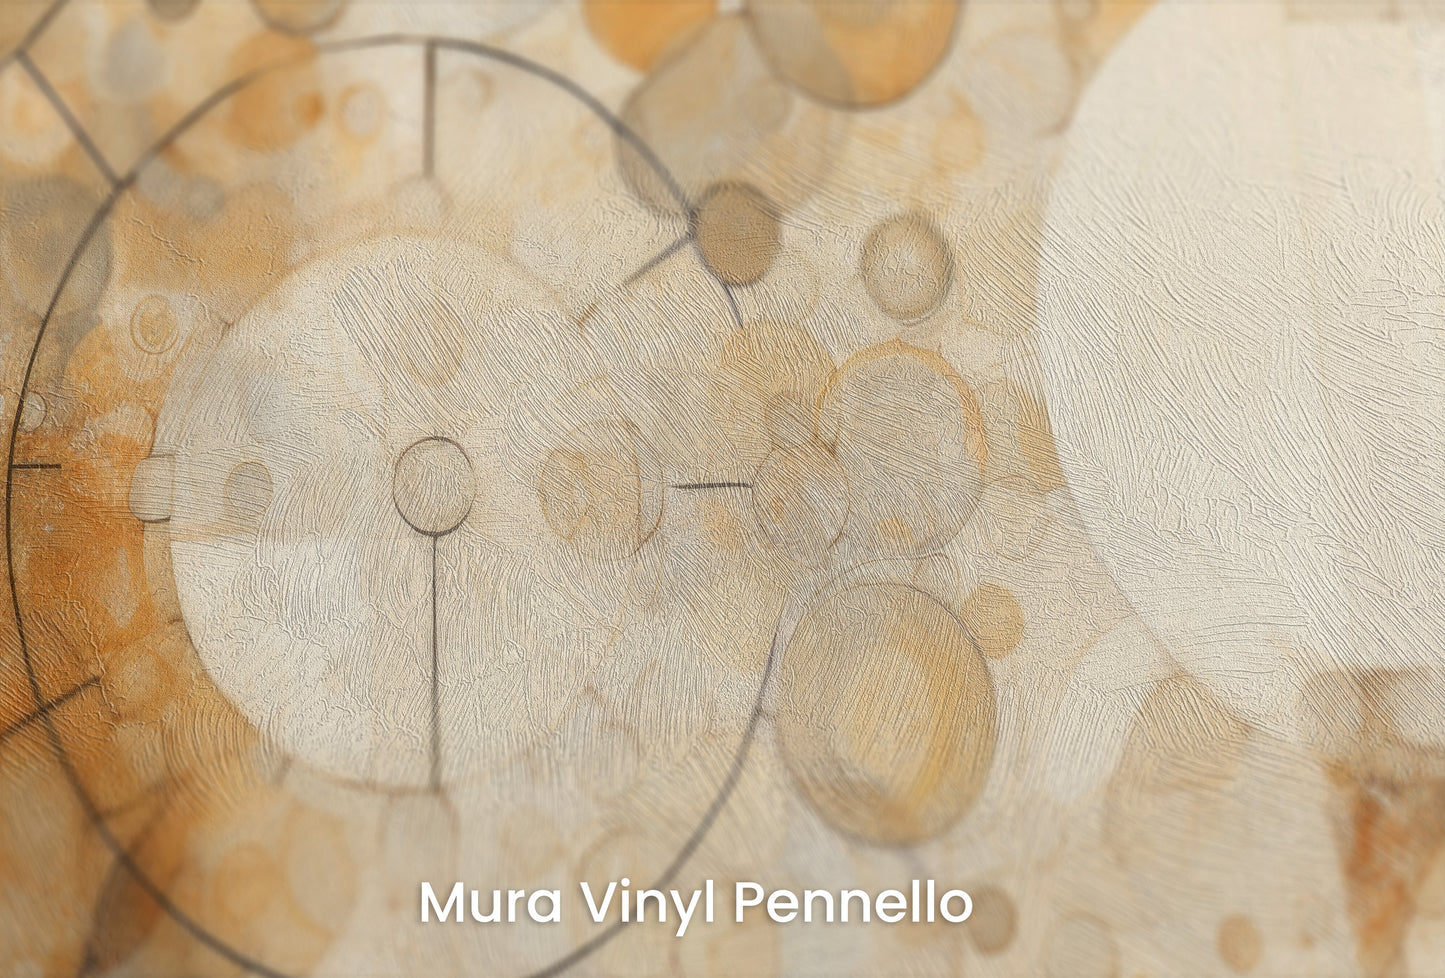 Zbliżenie na artystyczną fototapetę o nazwie BEIGE BUBBLES na podłożu Mura Vinyl Pennello - faktura pociągnięć pędzla malarskiego.